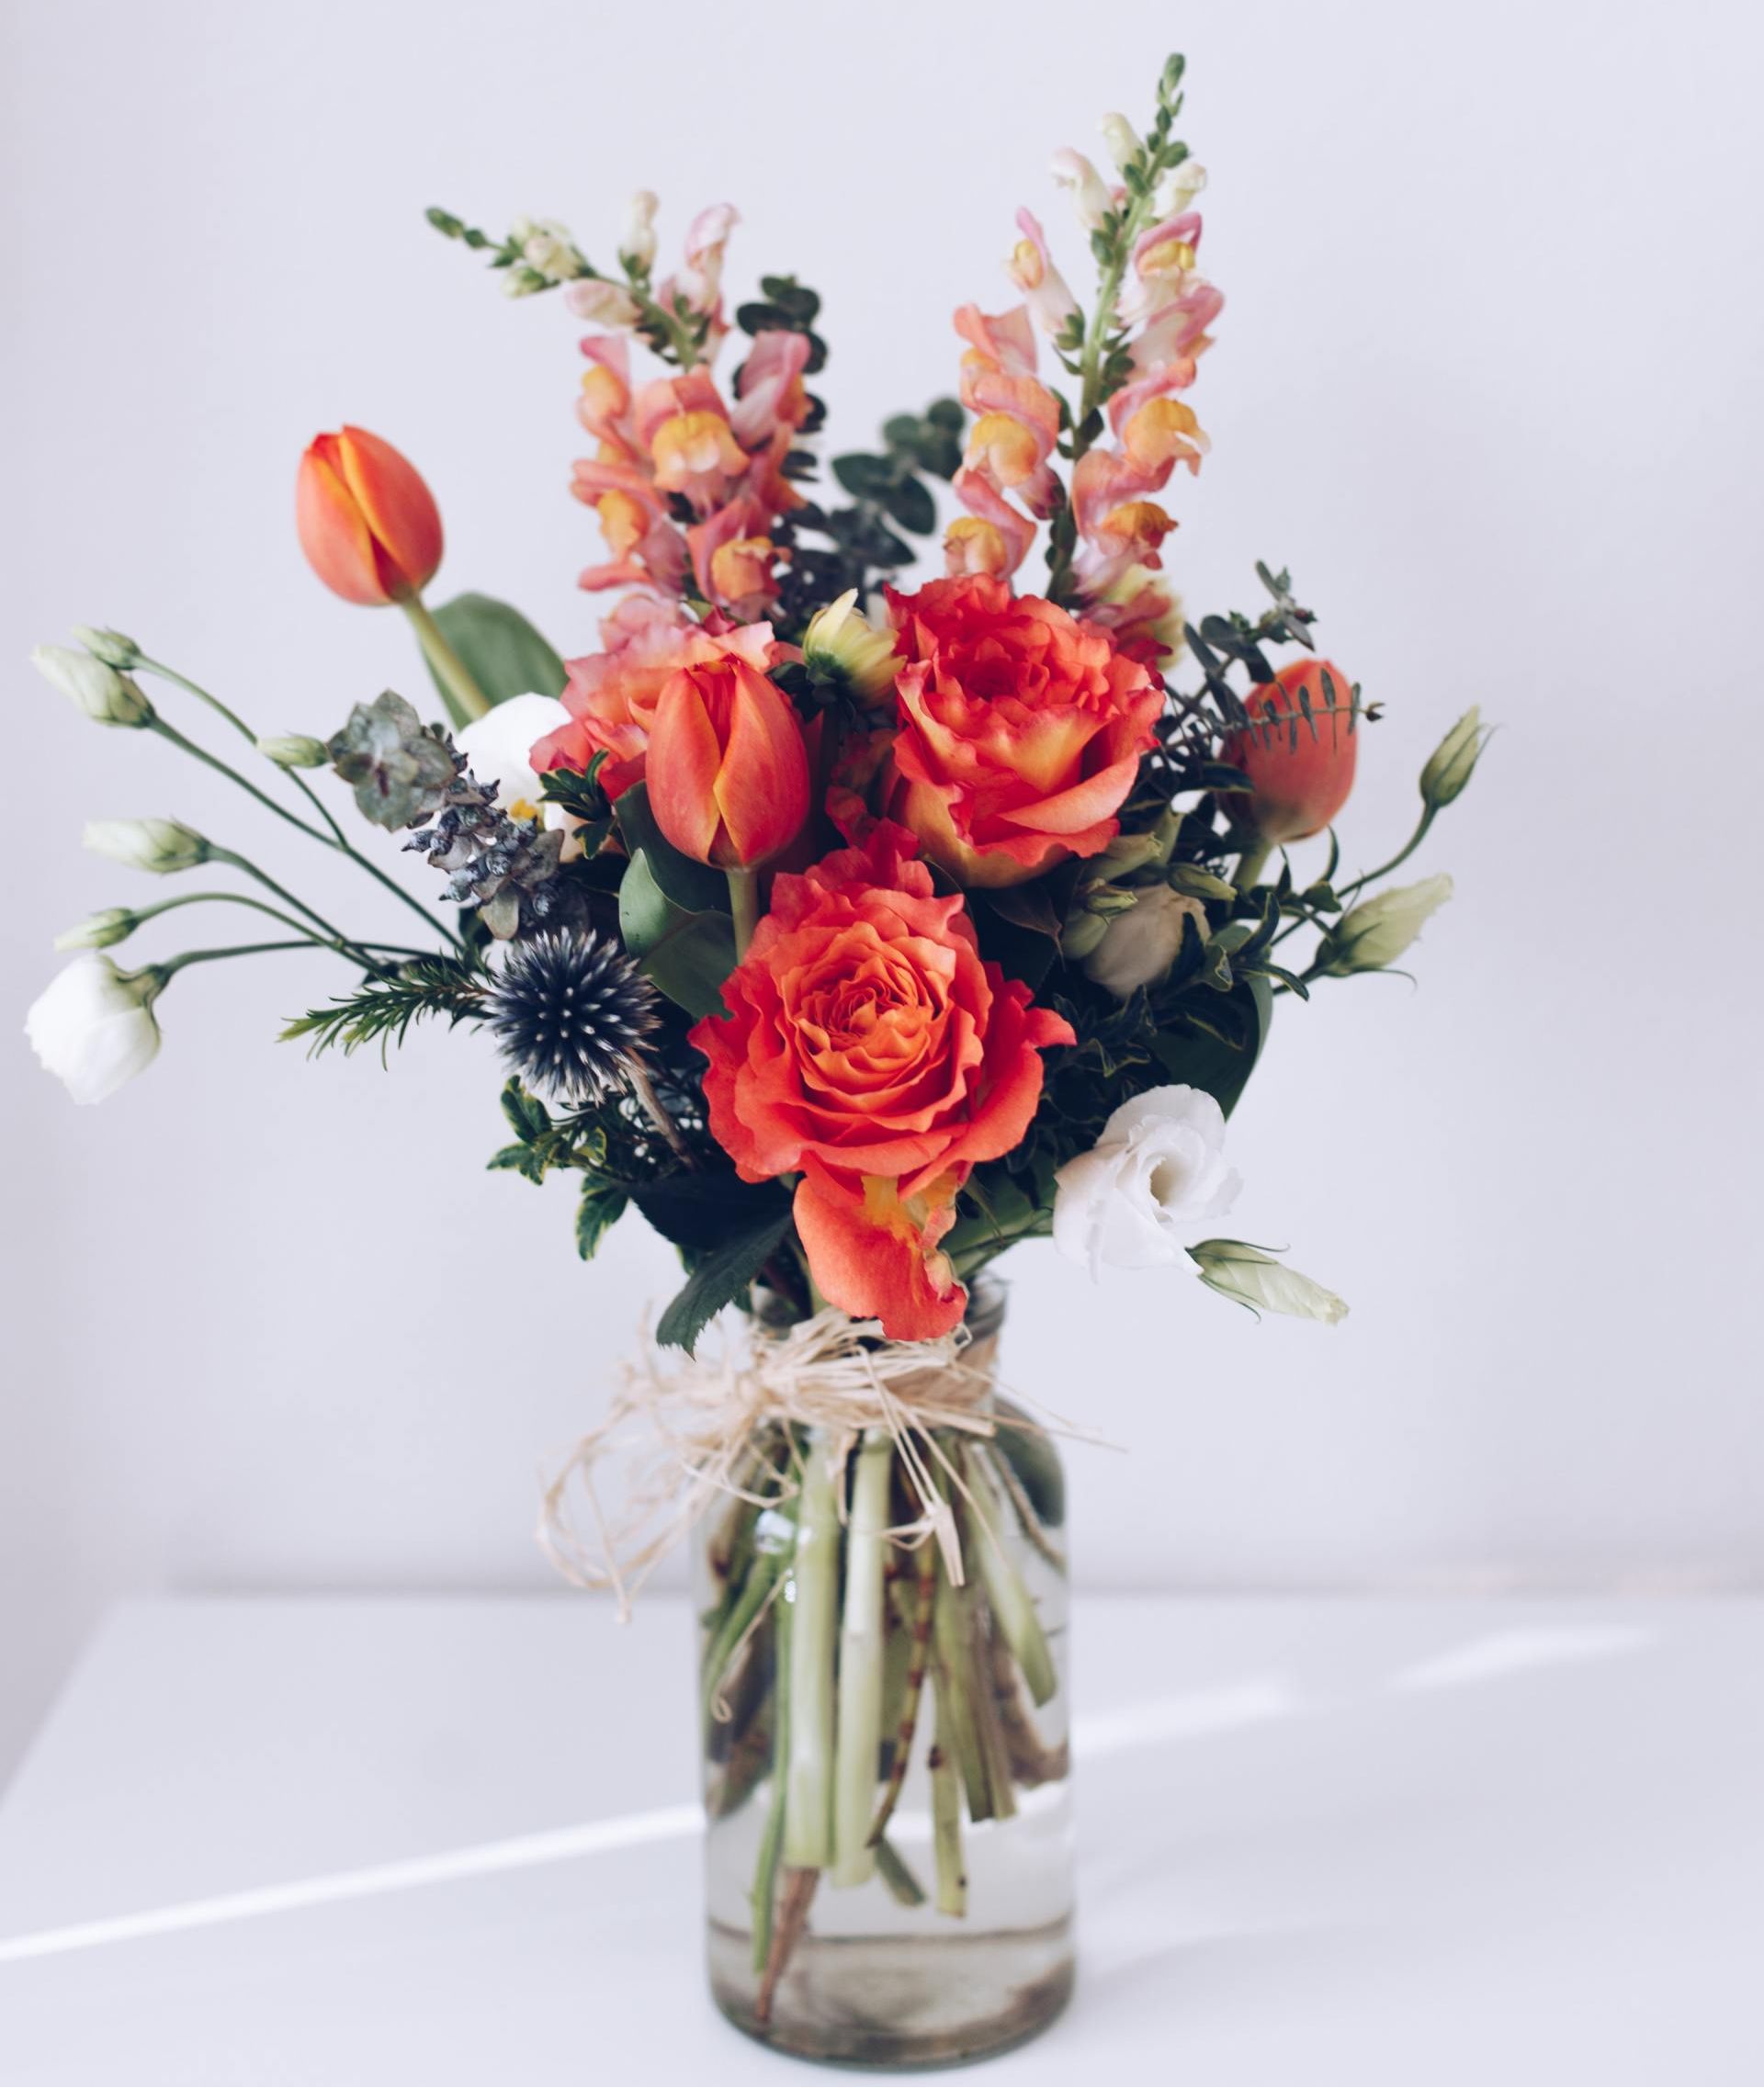 sending flowers-(flower vase)